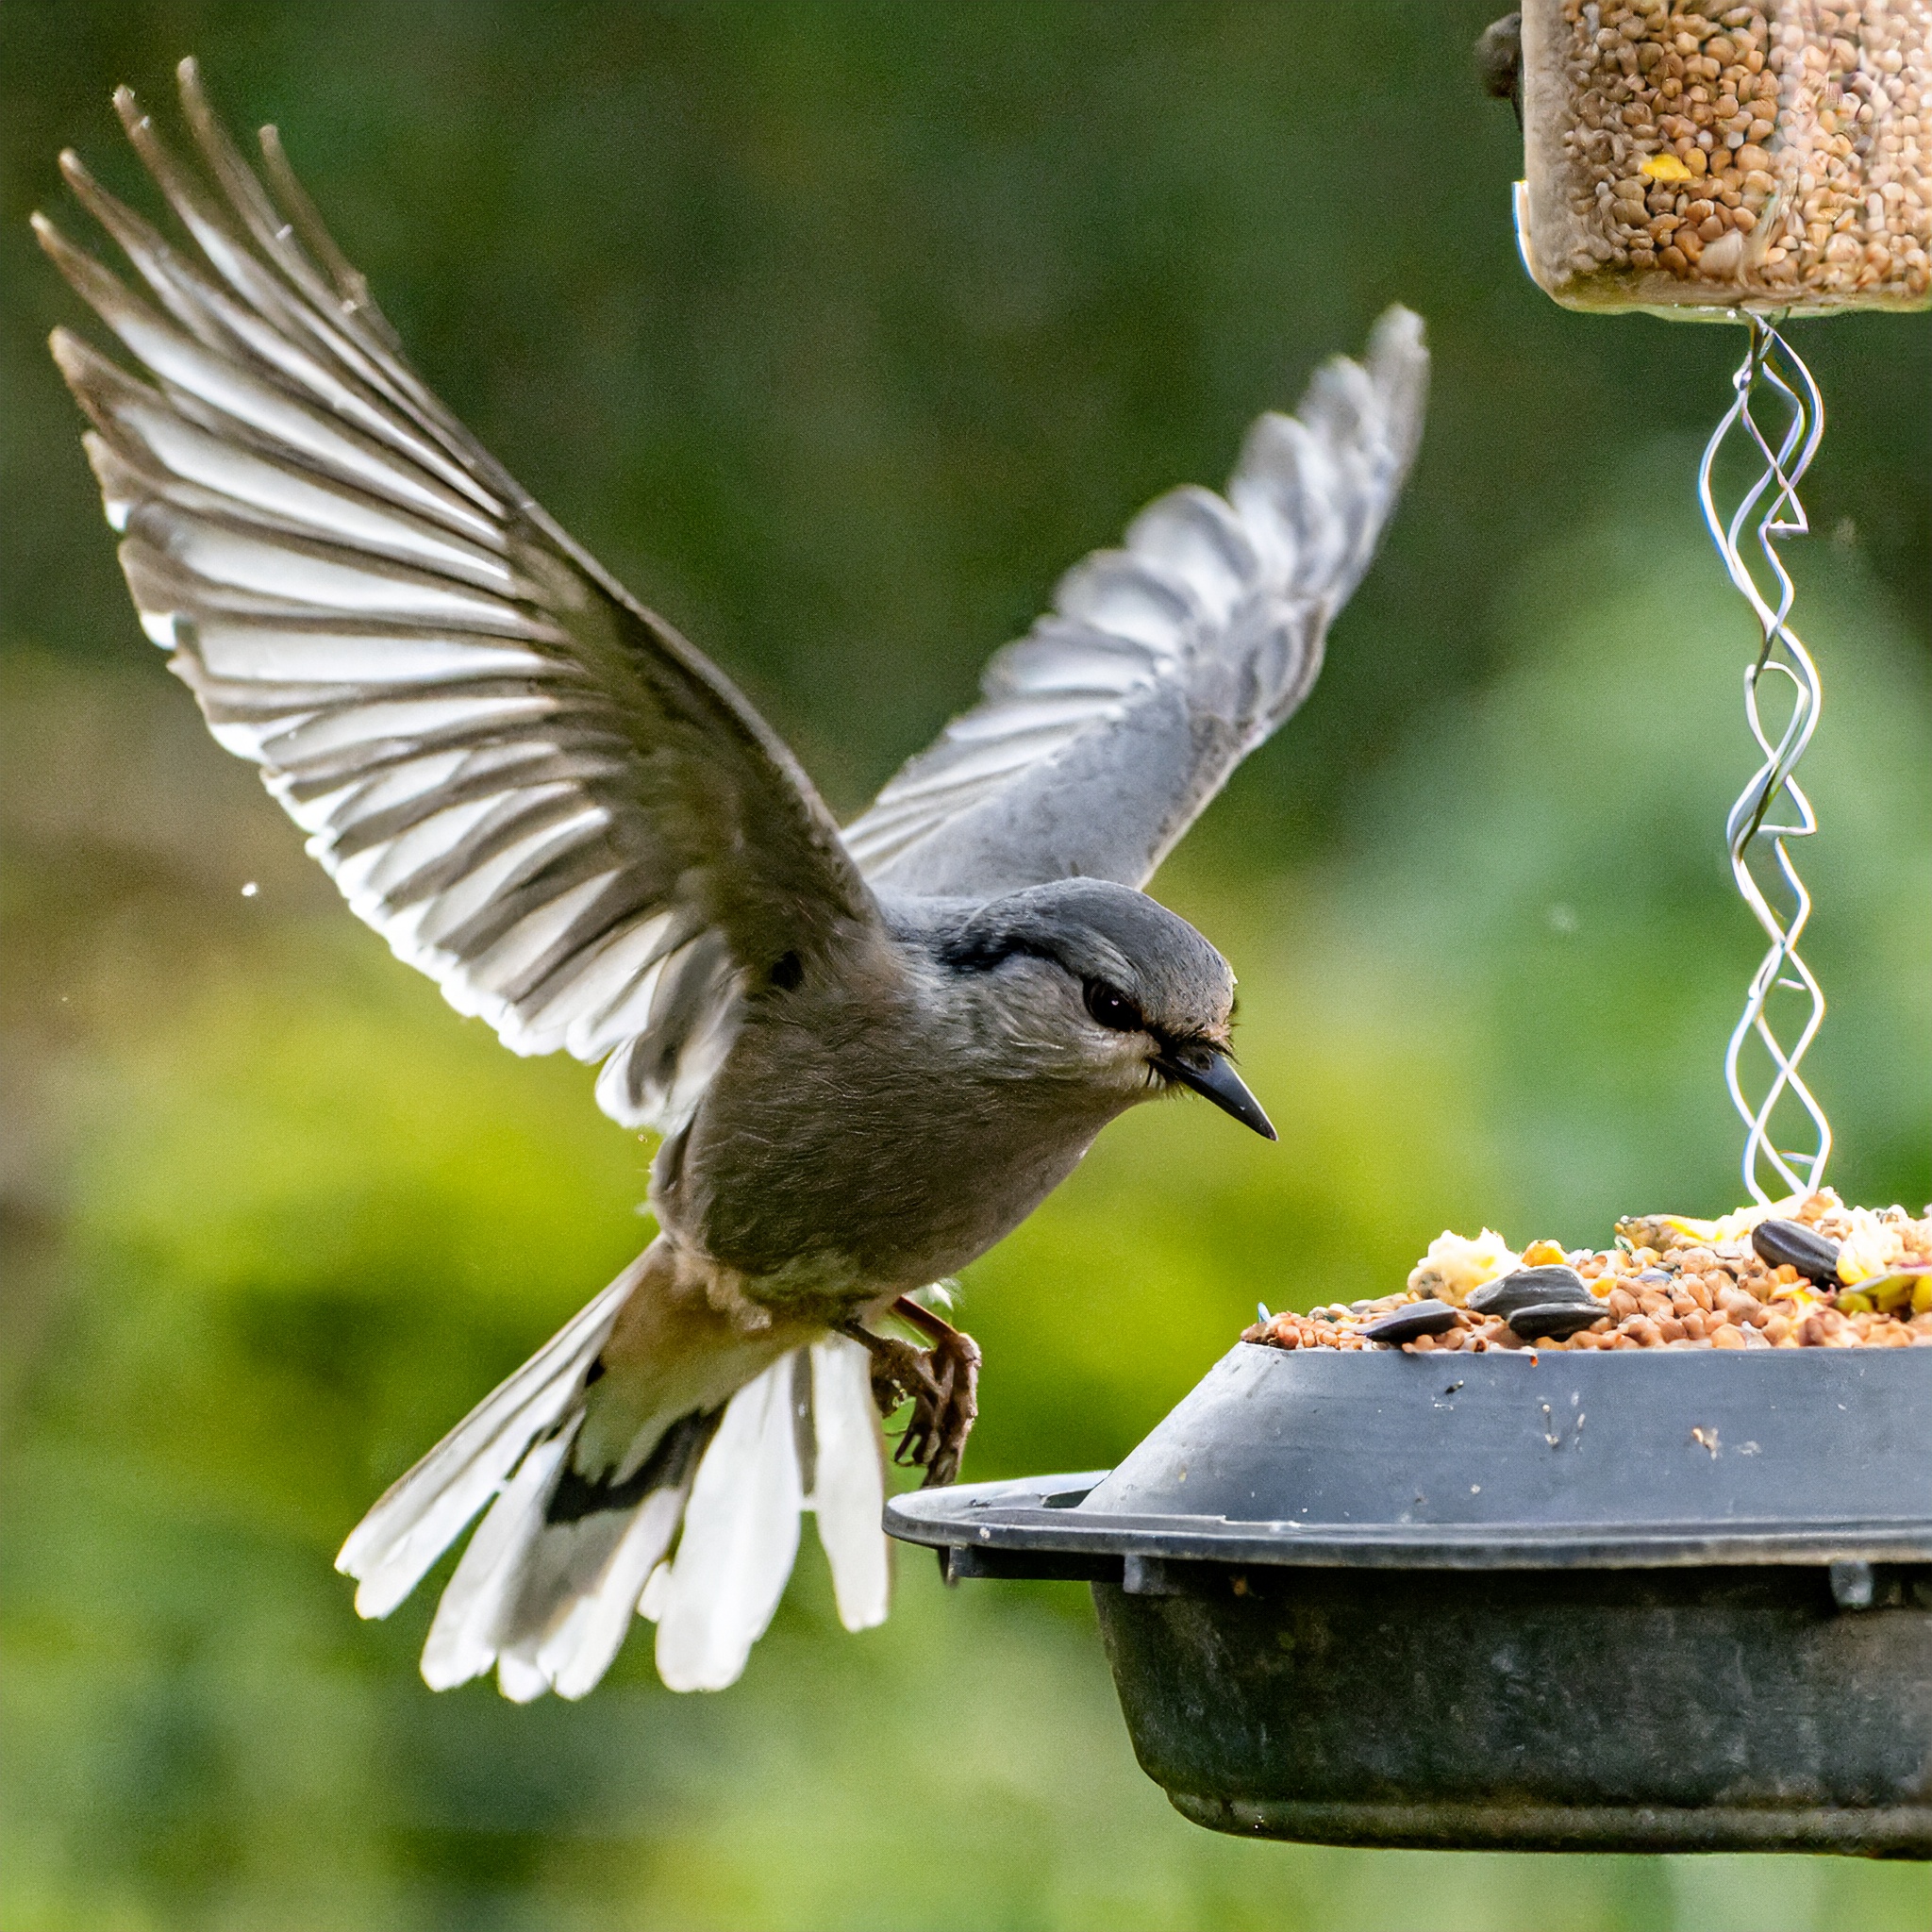 Bird infront of feeder